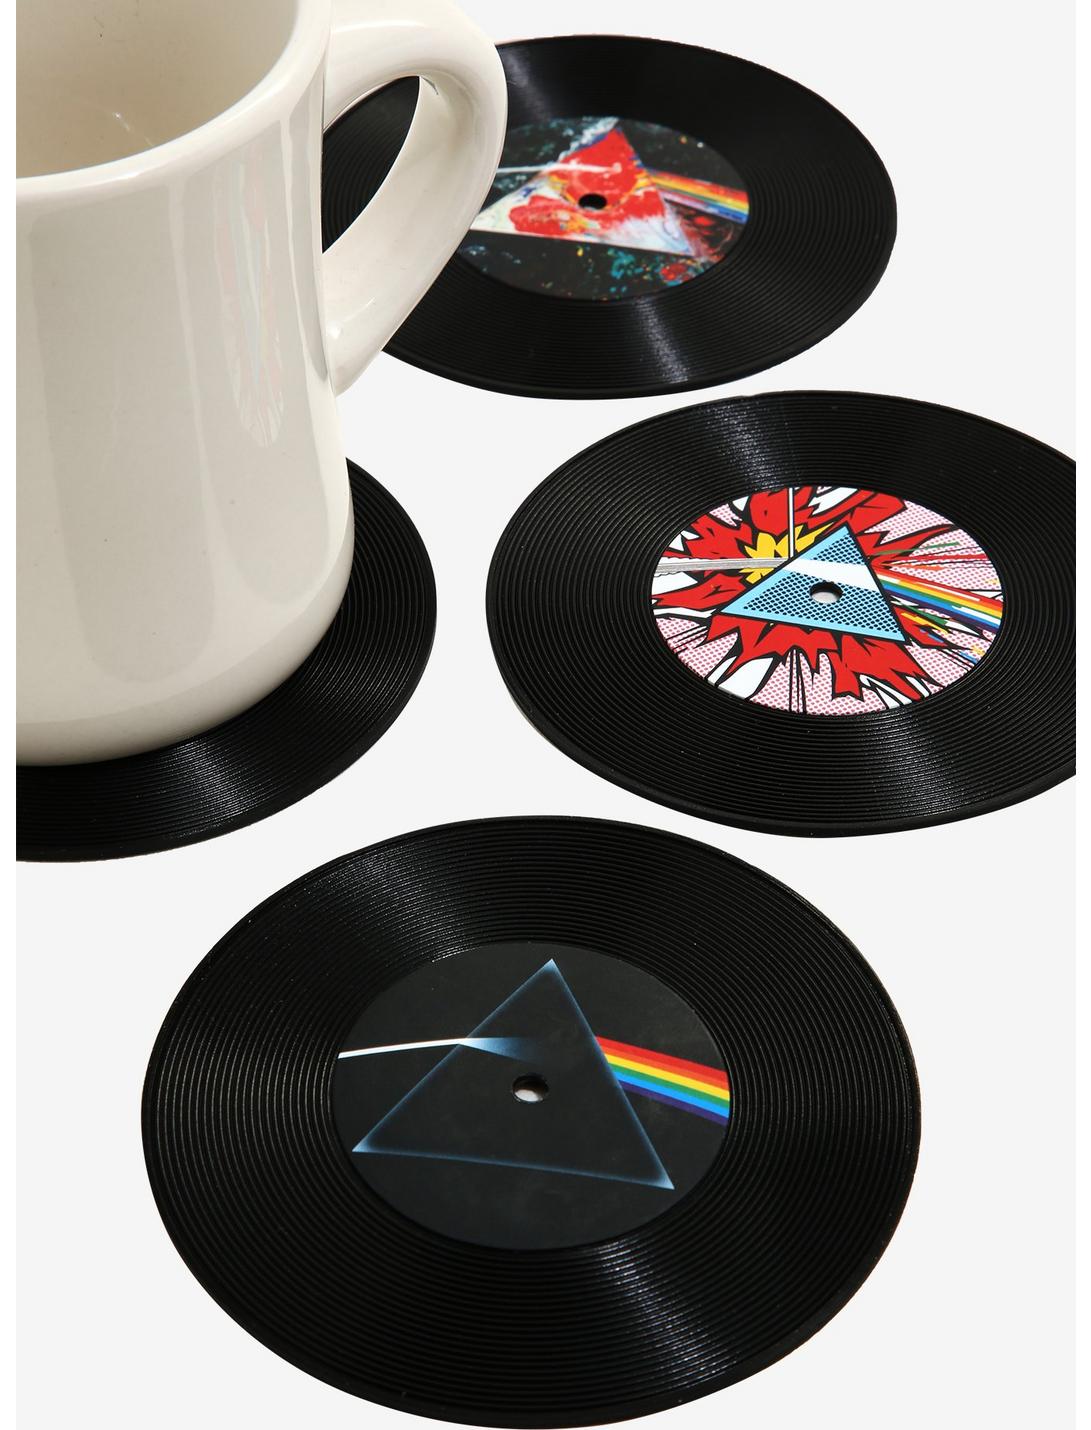 Pink Floyd Record Coaster Set, , hi-res